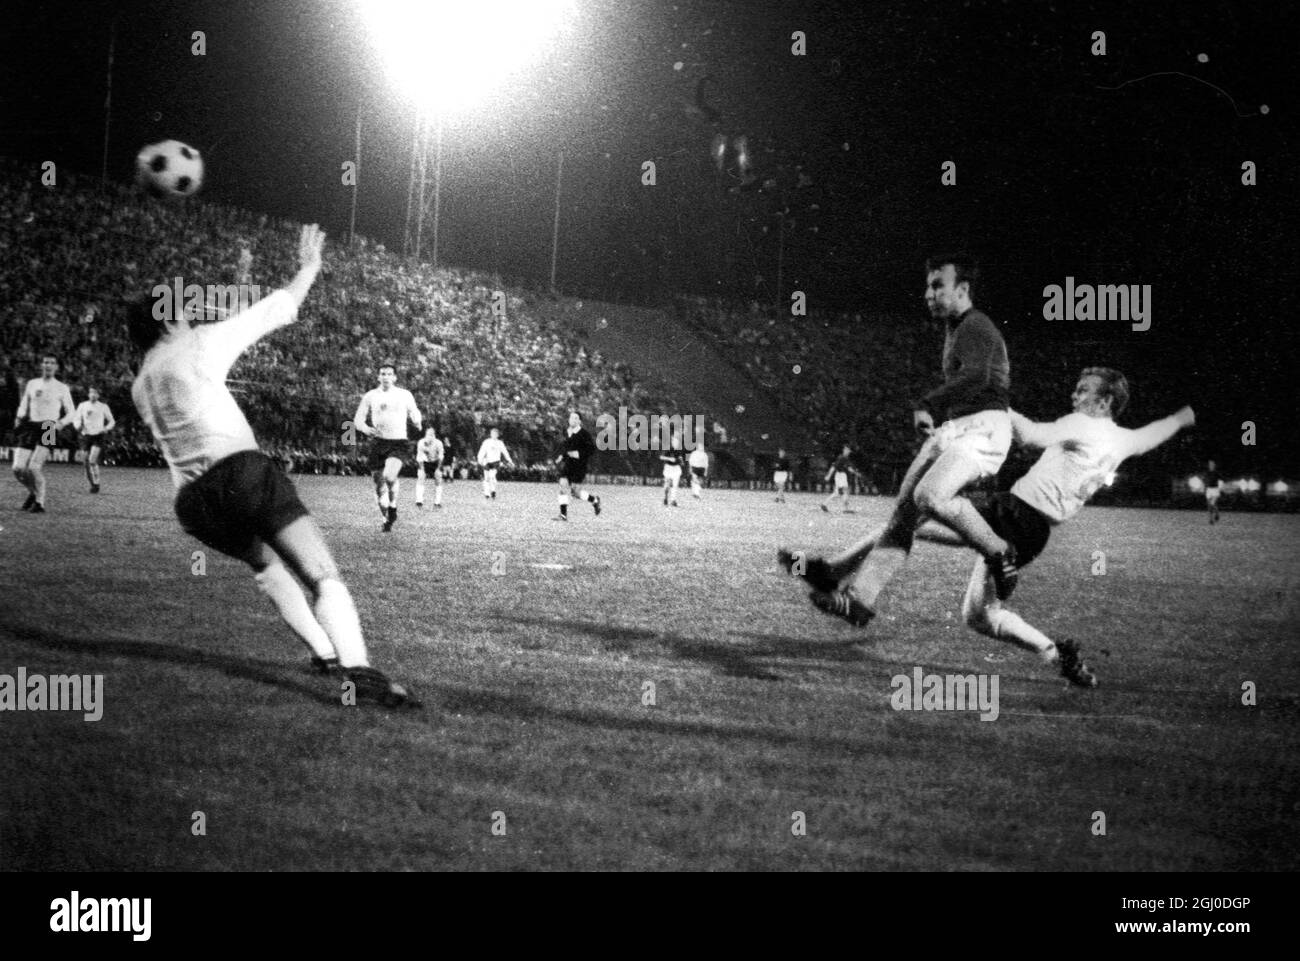 England Kapitän Bobby Moore tackt zu spät, um Dzajic von Jugoslawien zu stoppen, das Tor zu erzielen, das seiner Seite einen 1-0-Sieg im Halbfinale des European Nations Cups am 5. Juni 1968 bescherte - Florenz, Italien Stockfoto